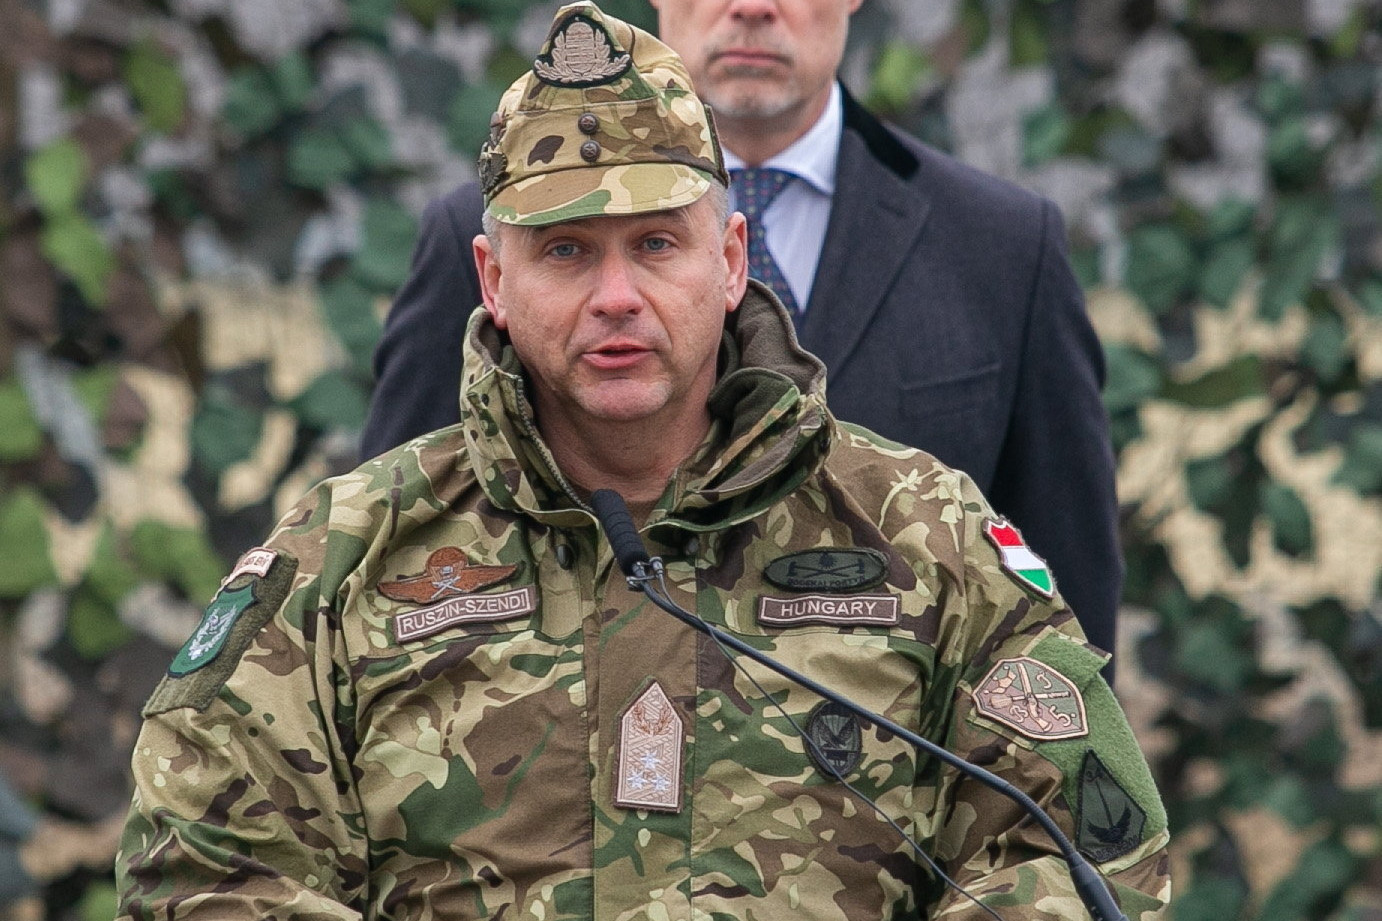 Ruszin-Szendi Romulusz altábornagy, a Magyar Honvédség parancsnoka beszédet mond az egységes alapkiképzést teljesítő önkéntes területvédelmi tartalékos állomány katonai eskütételén Kecskeméten